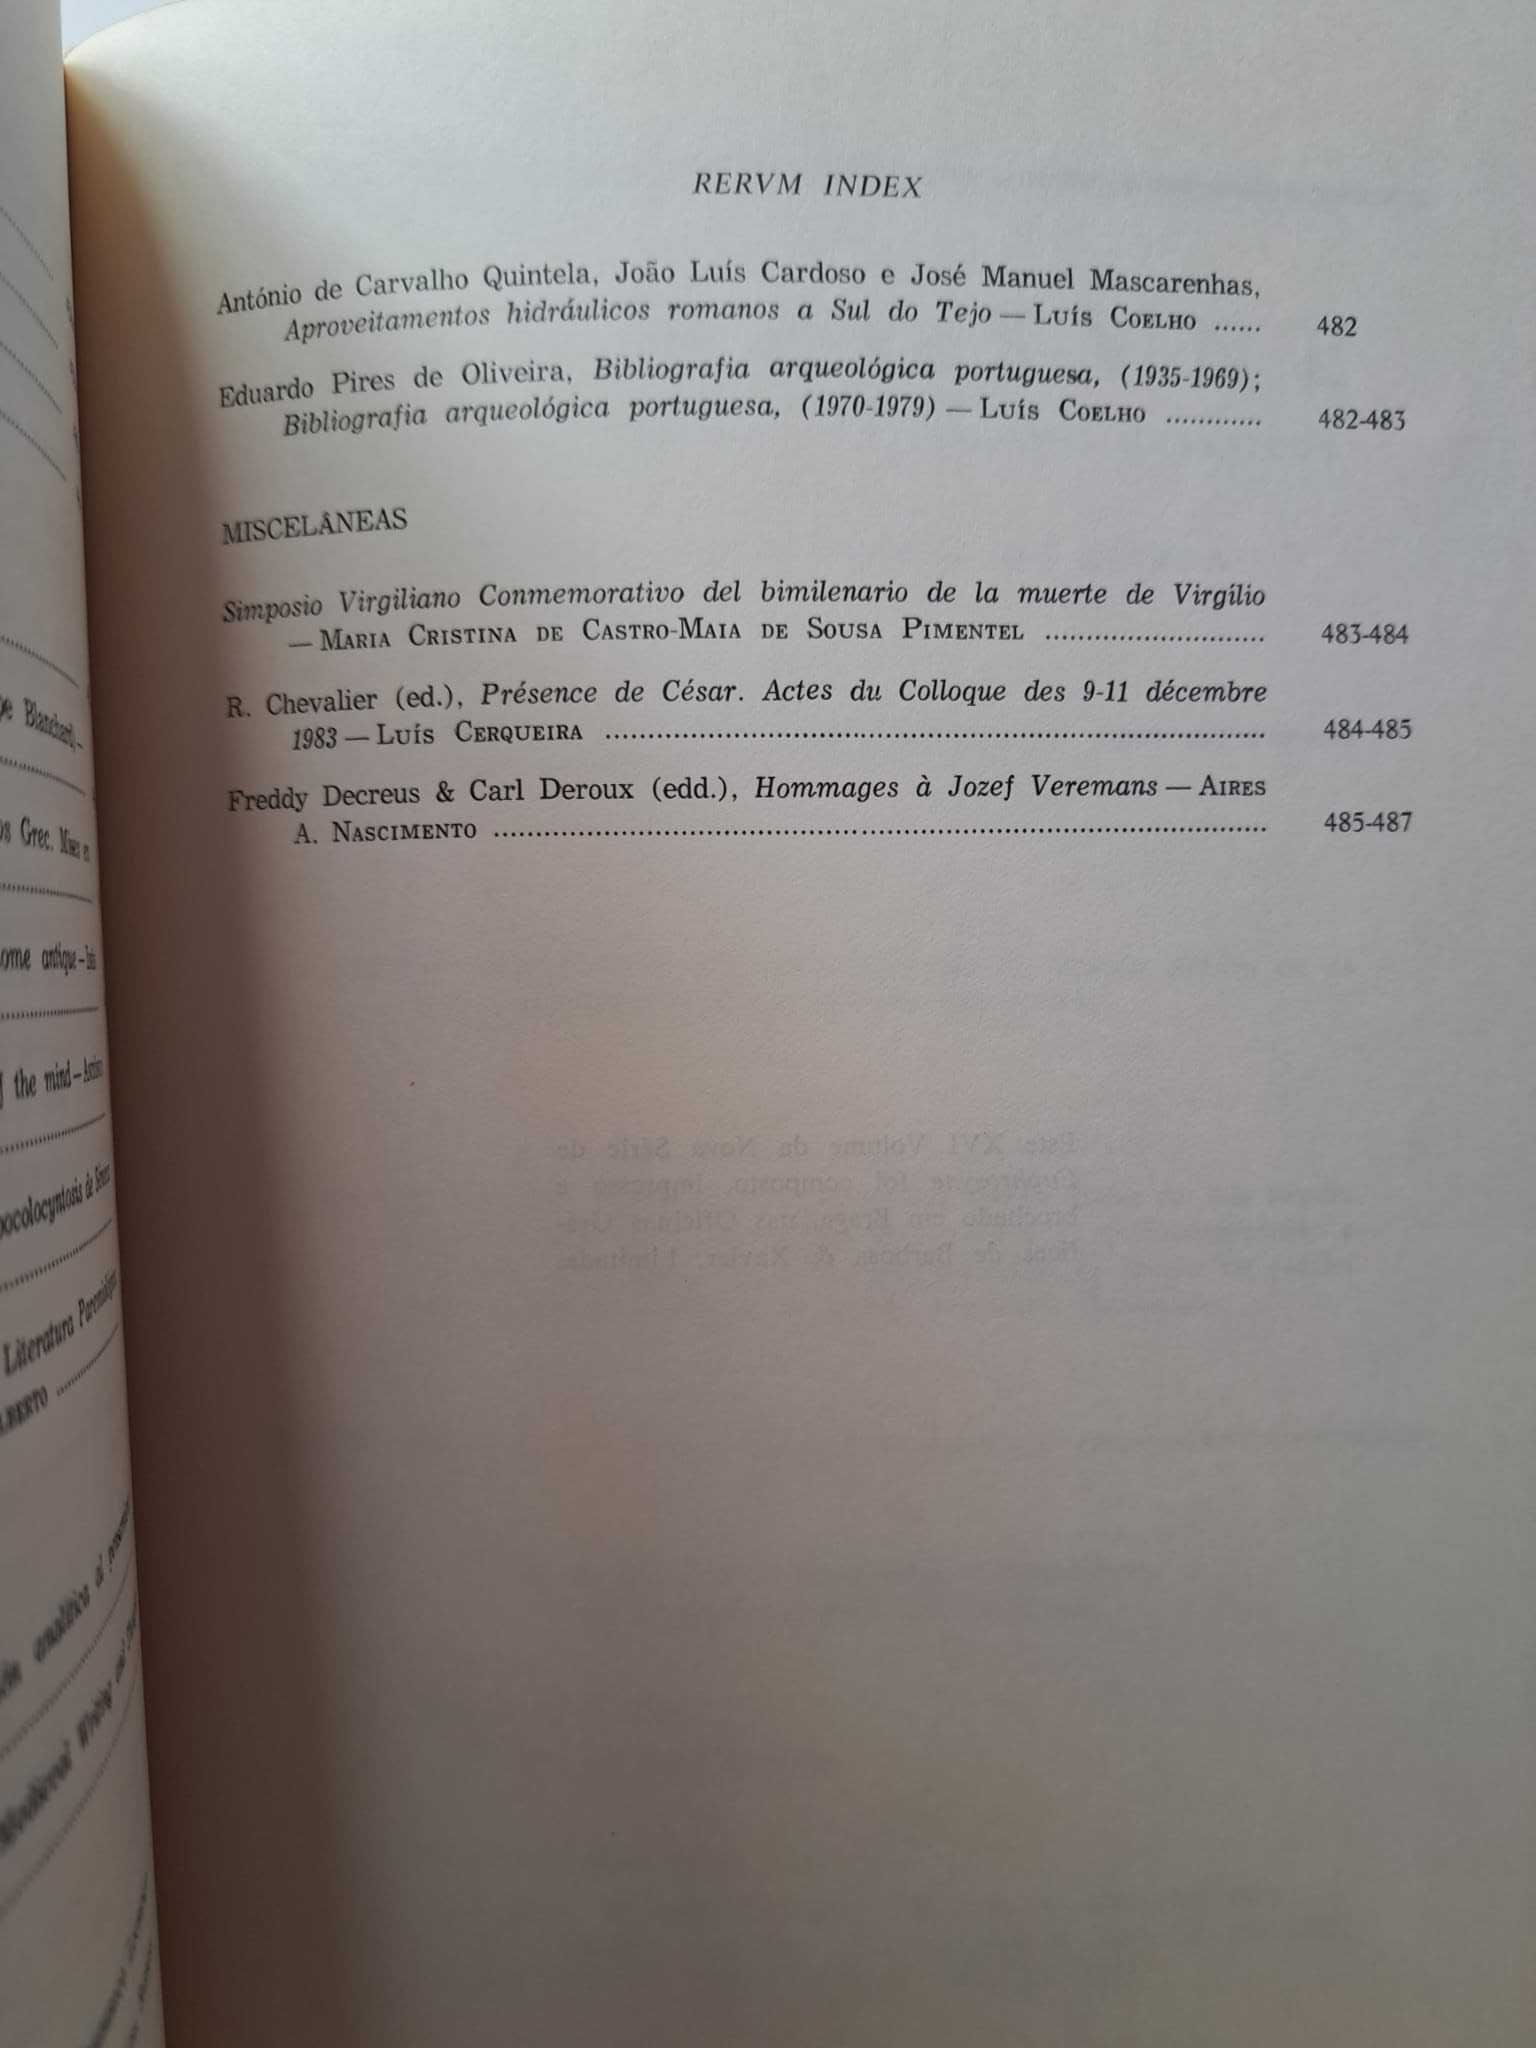 Euphrosyne Revista de Filologia Clássica Vol. XVI - PORTES GRÁTIS